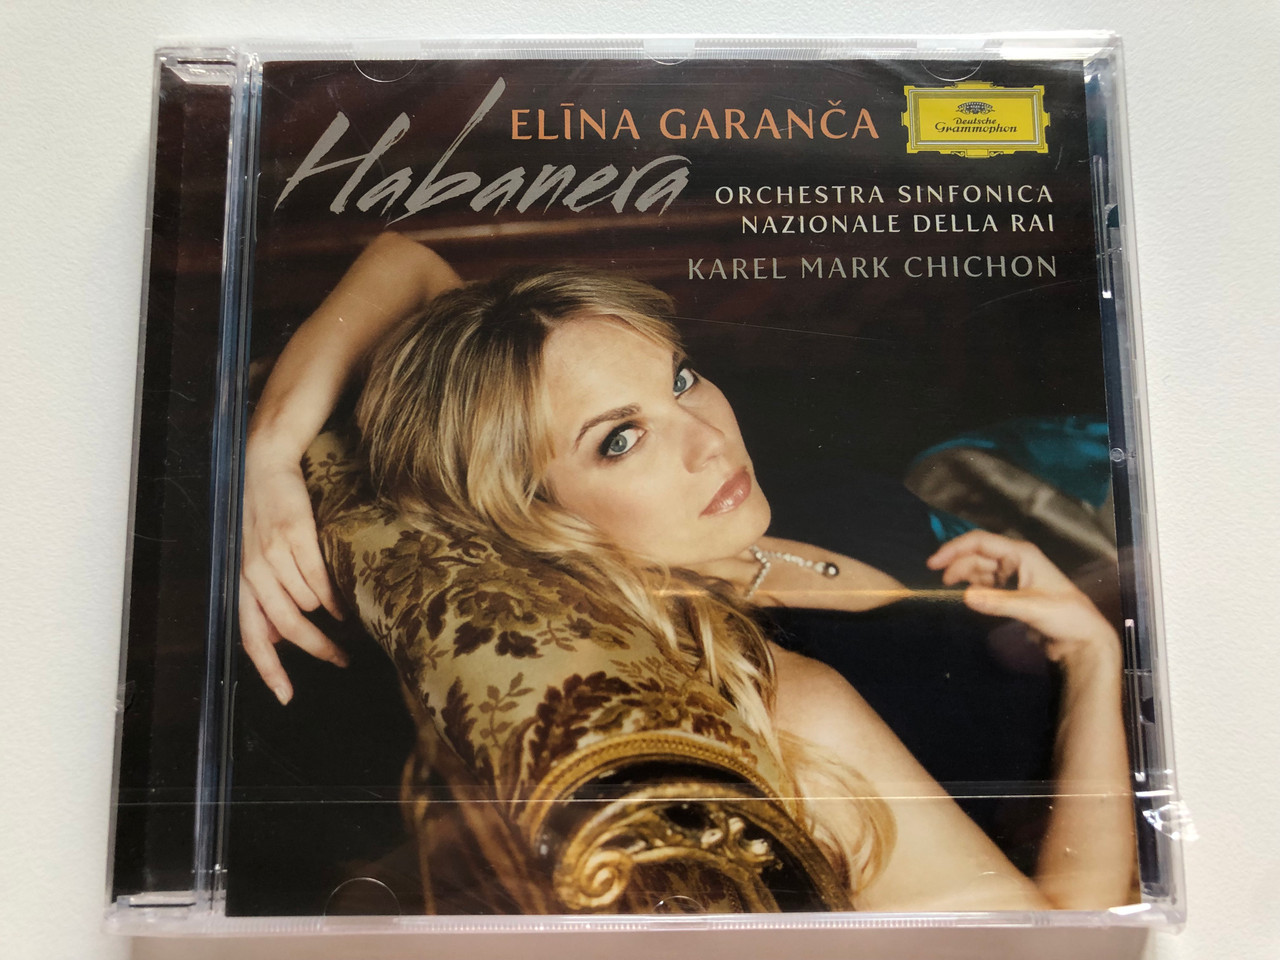 Elīna Garanča - Habanera / Orchestra Sinfonica Nazionale Della RAI, Karel  Mark Chichon / Deutsche Grammophon Audio CD 2010 / 477 8776 -  bibleinmylanguage